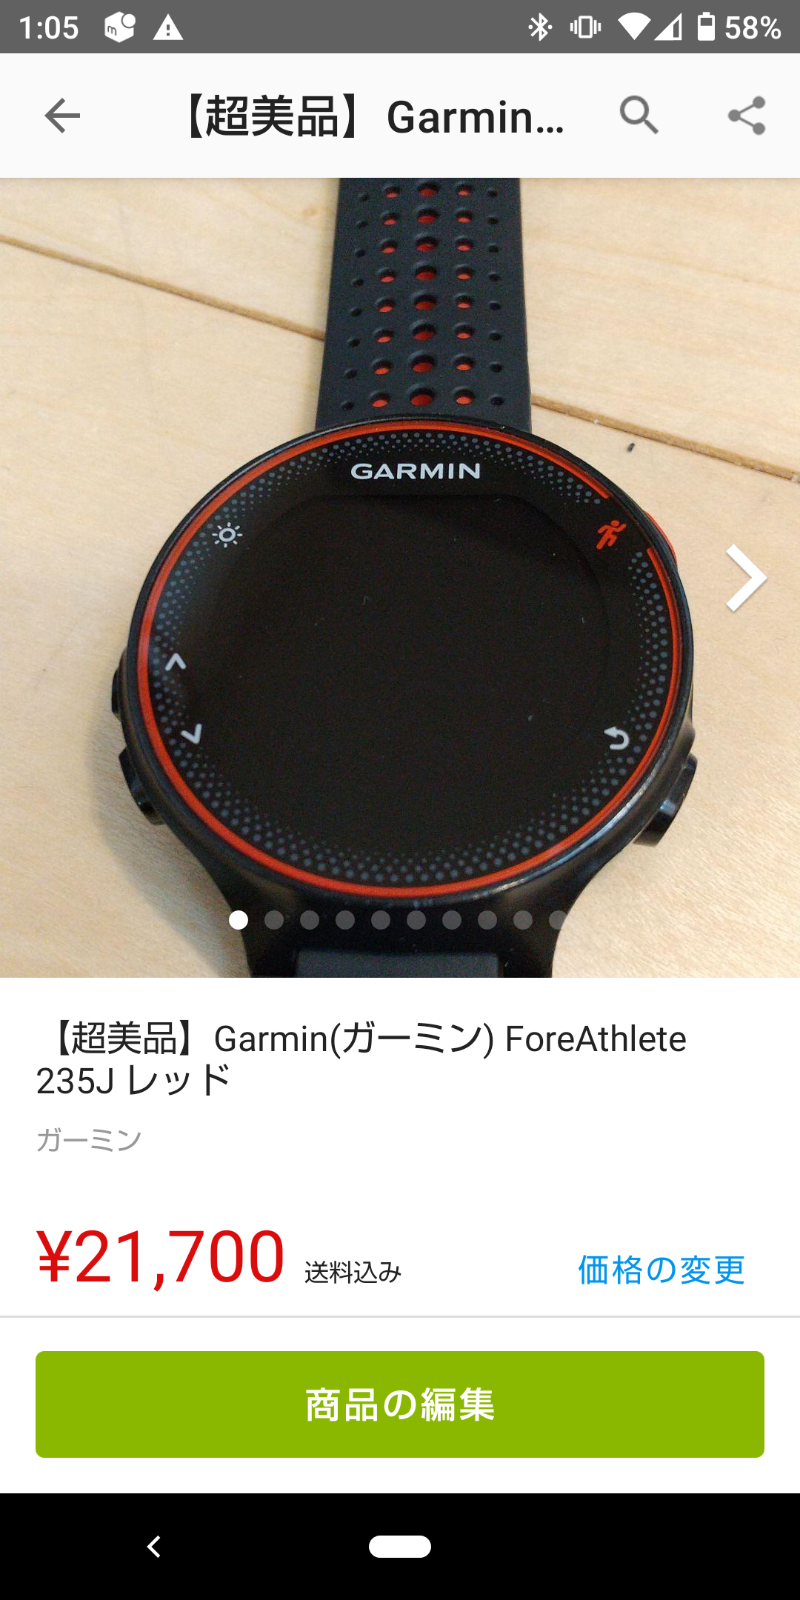 超美品】Garmin(ガーミン) ForeAthlete 235J レッド fresh2go.co.ke